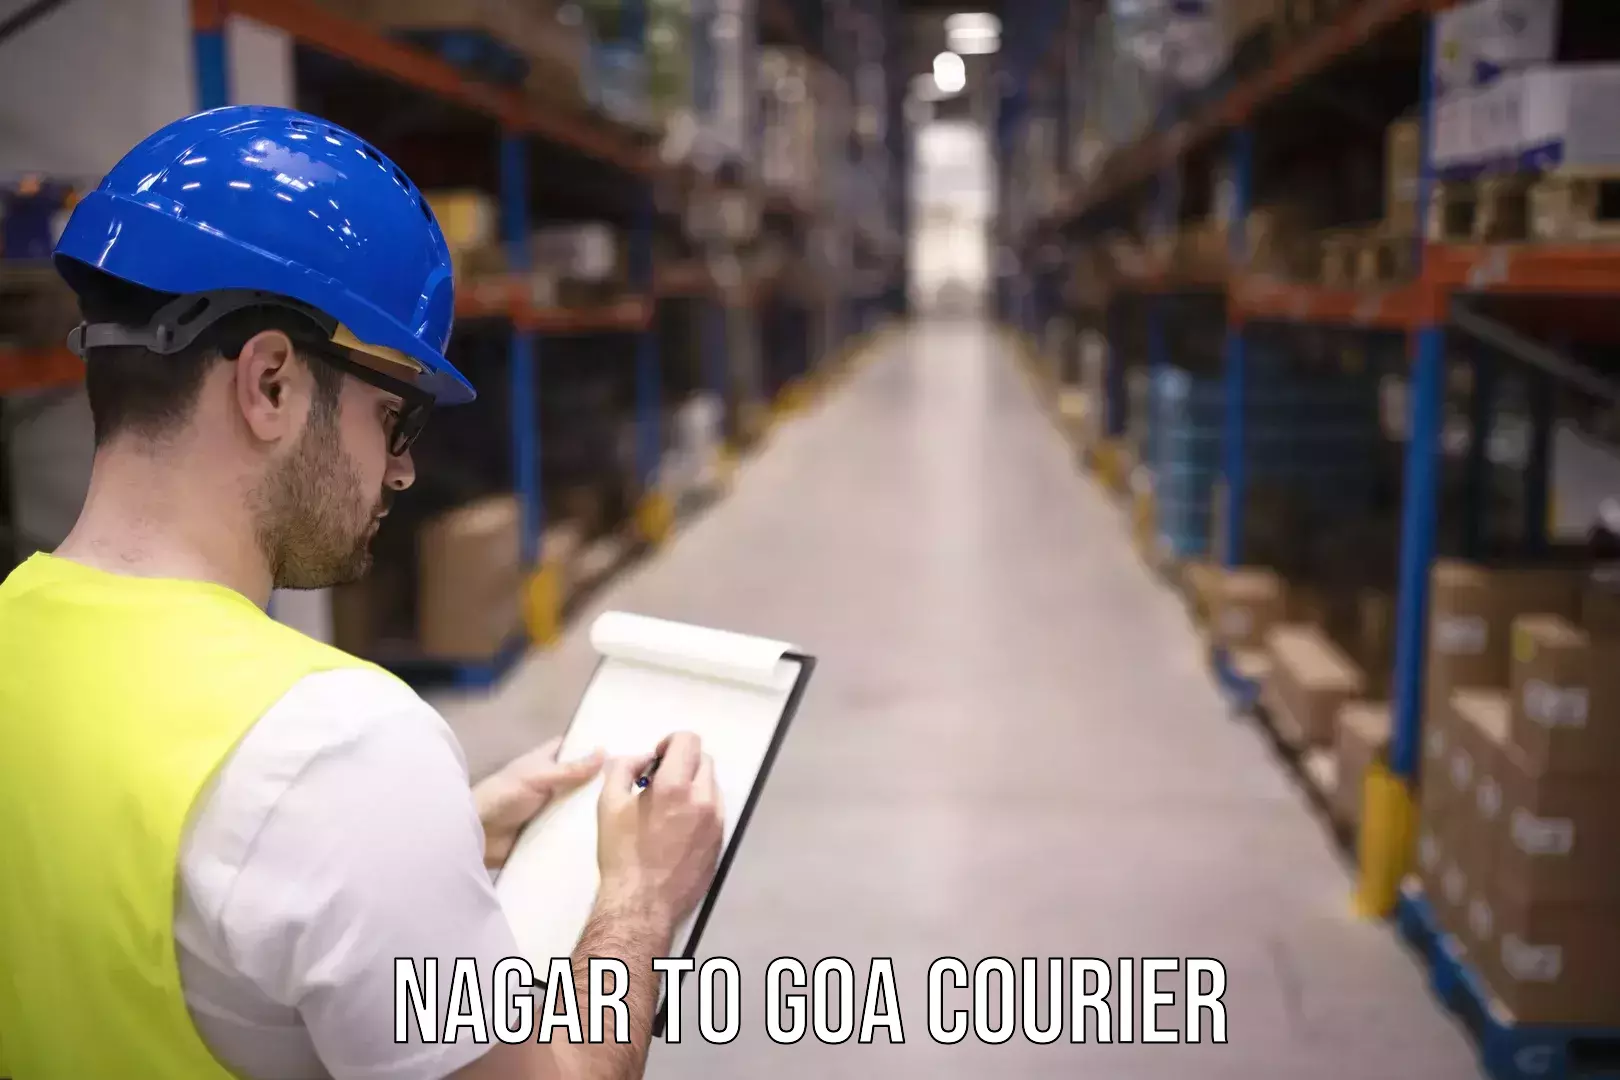 Quick courier services Nagar to Goa